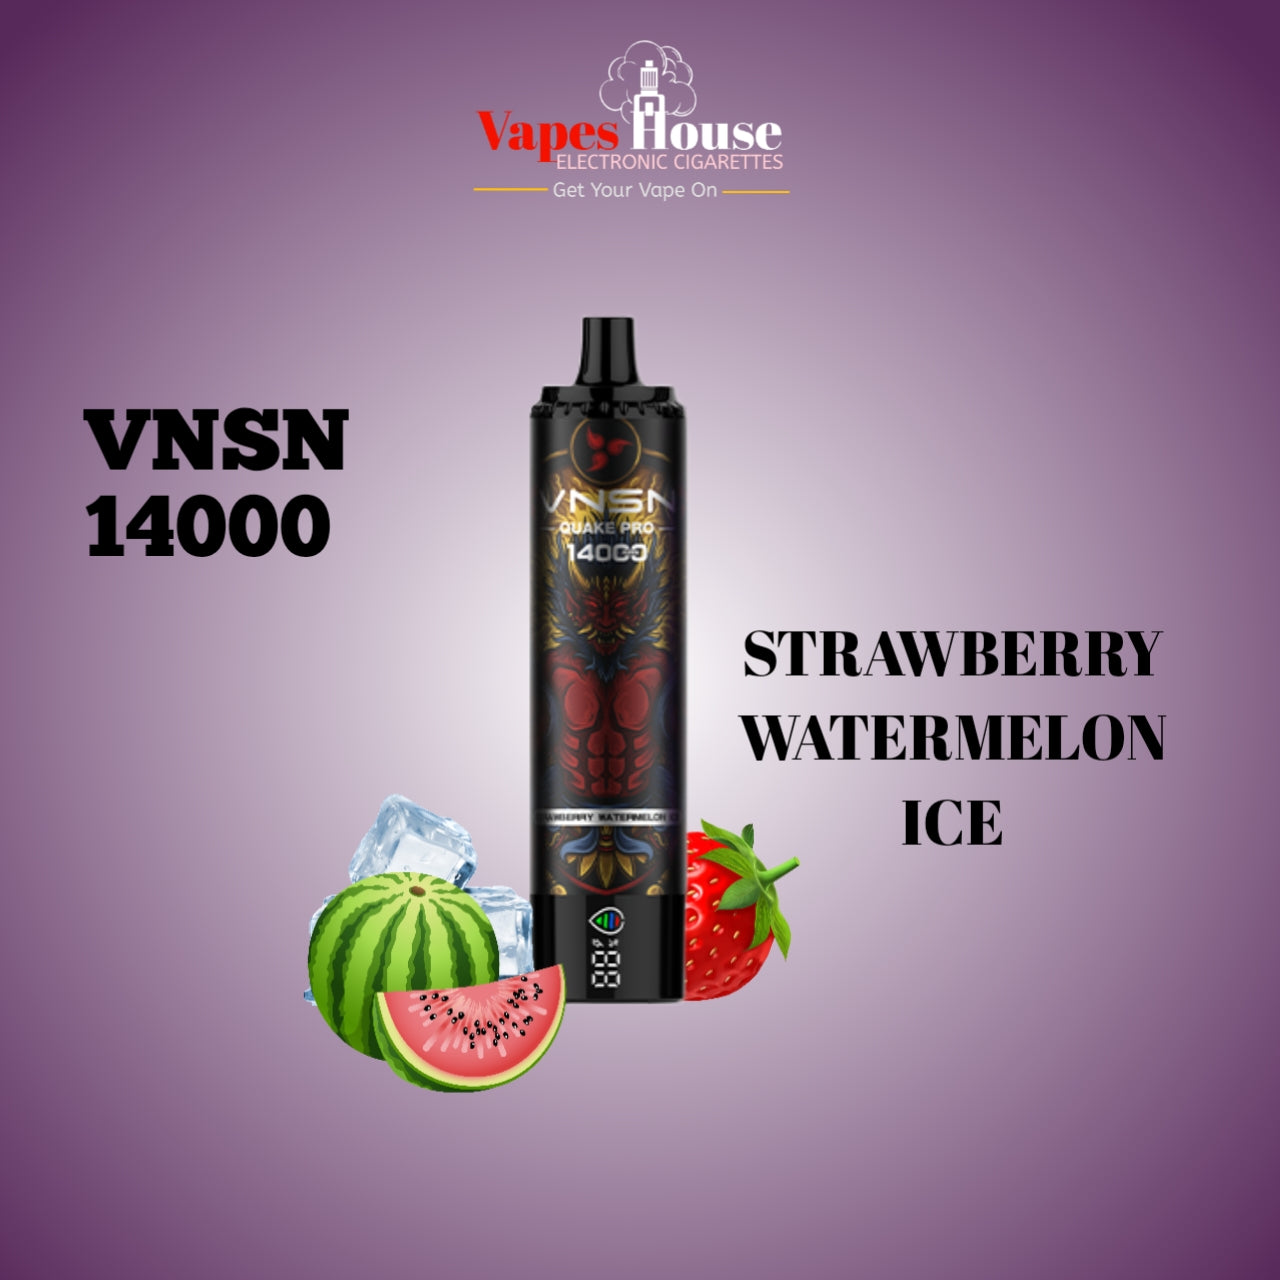 VNSN QUAKE PRO 14000 STRAWBERRY WATERMELON ICE